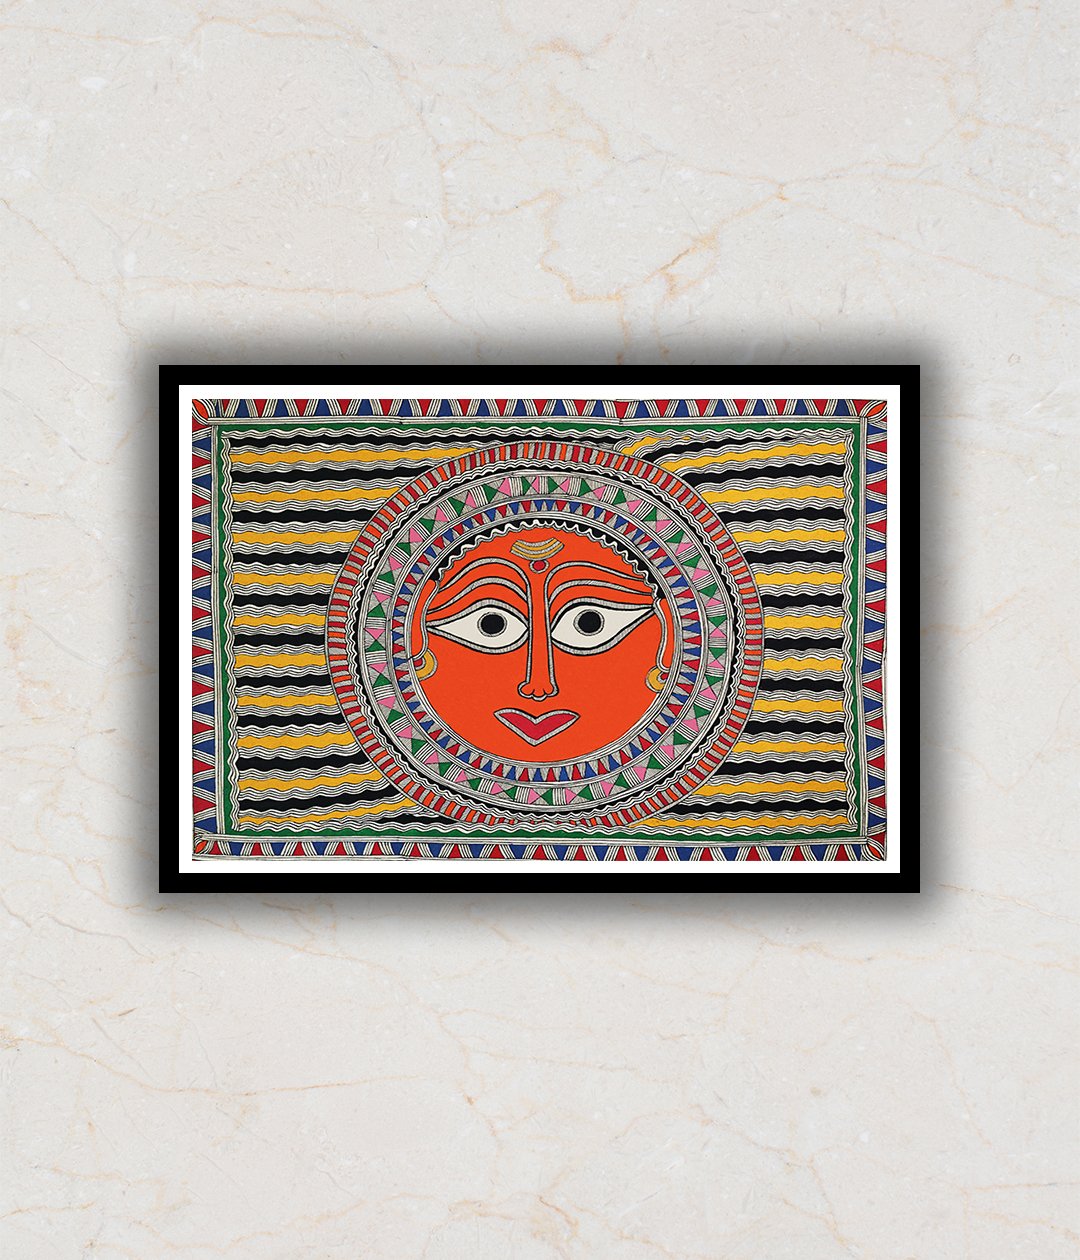 The Sun God Madhubani Art Painting For Home Wall Art Decor